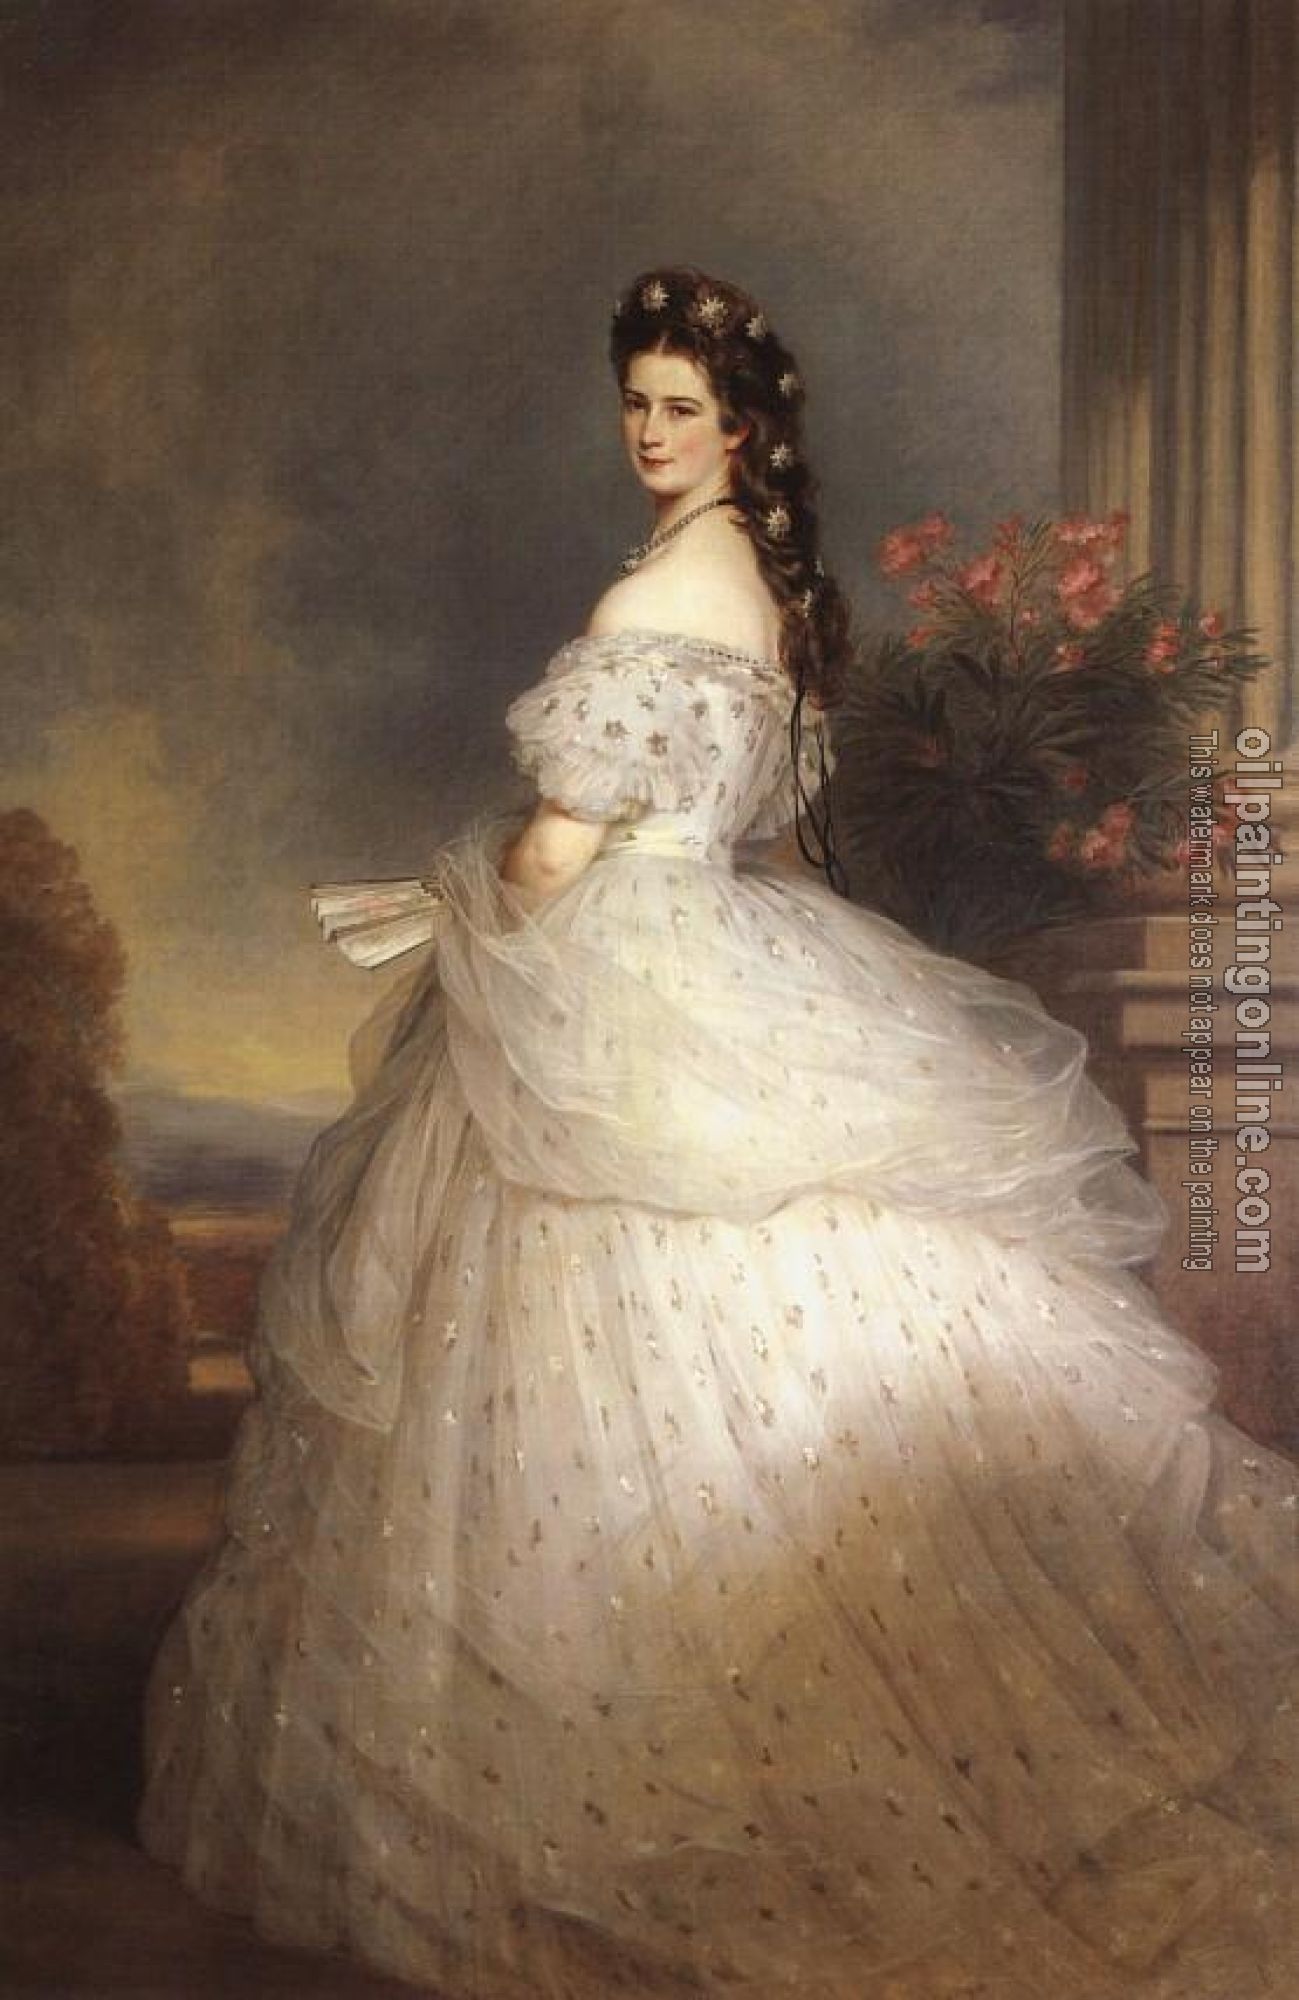 Winterhalter, Franz Xavier - Empress Elisabeth of Austria with diamond stars on her hair